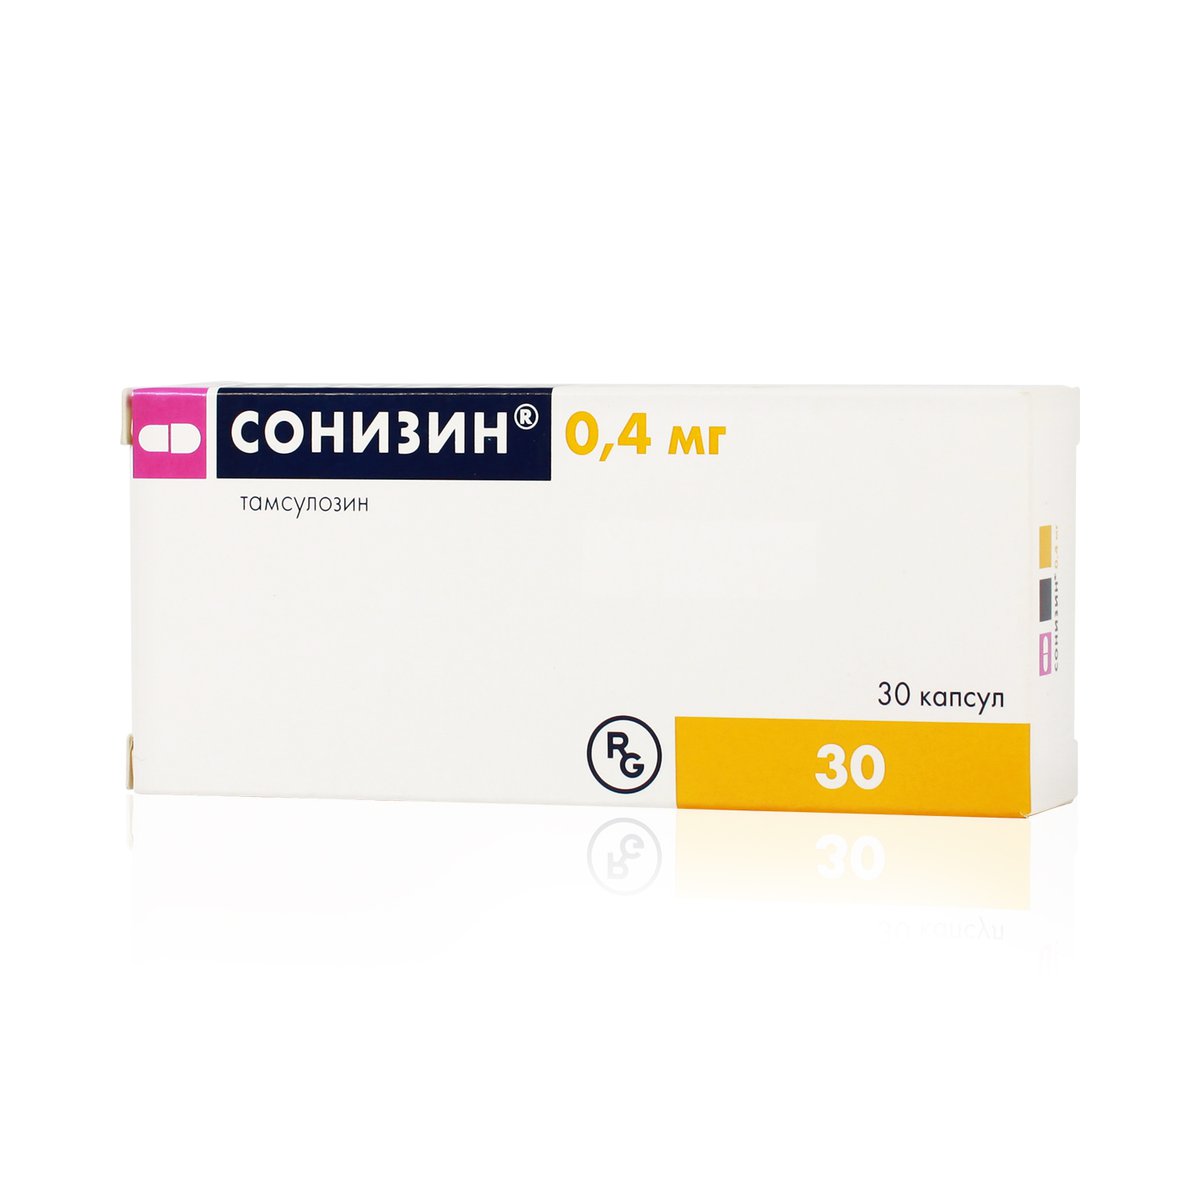 Сонизин (капсулы, 30 шт, 0,4 мг) - цена,  онлайн  .